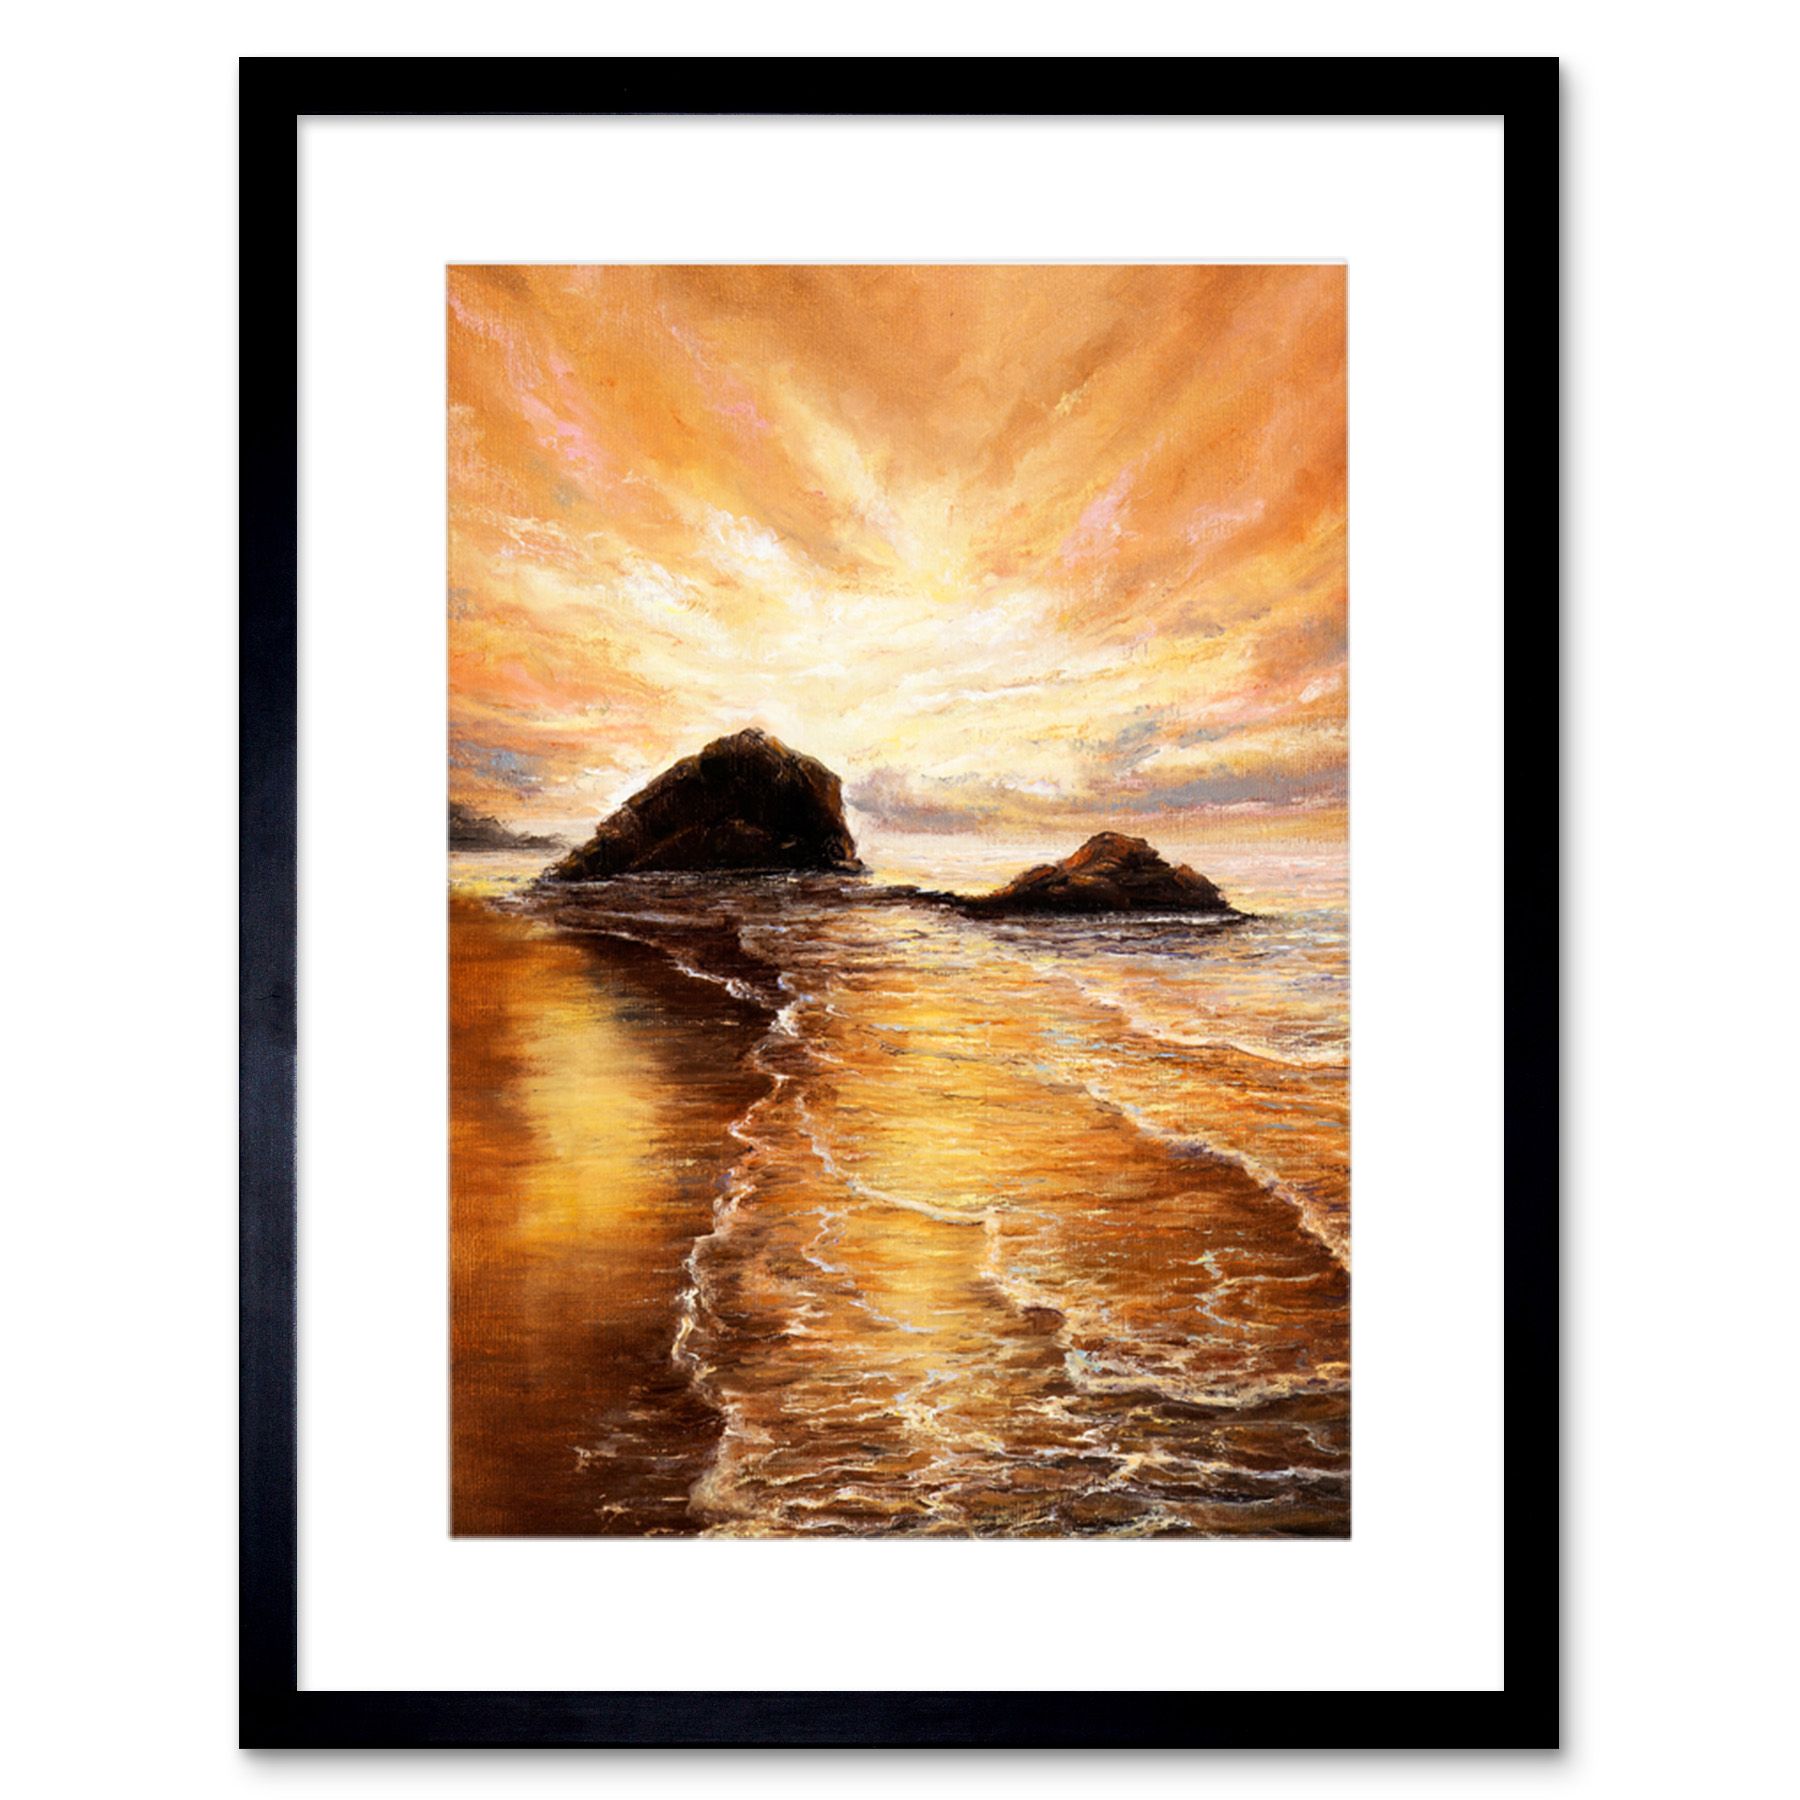 Golden Sunrise Painting Framed Wall Art Print 12x16 Dans | Ebay In Sunrise Wall Art (View 8 of 15)